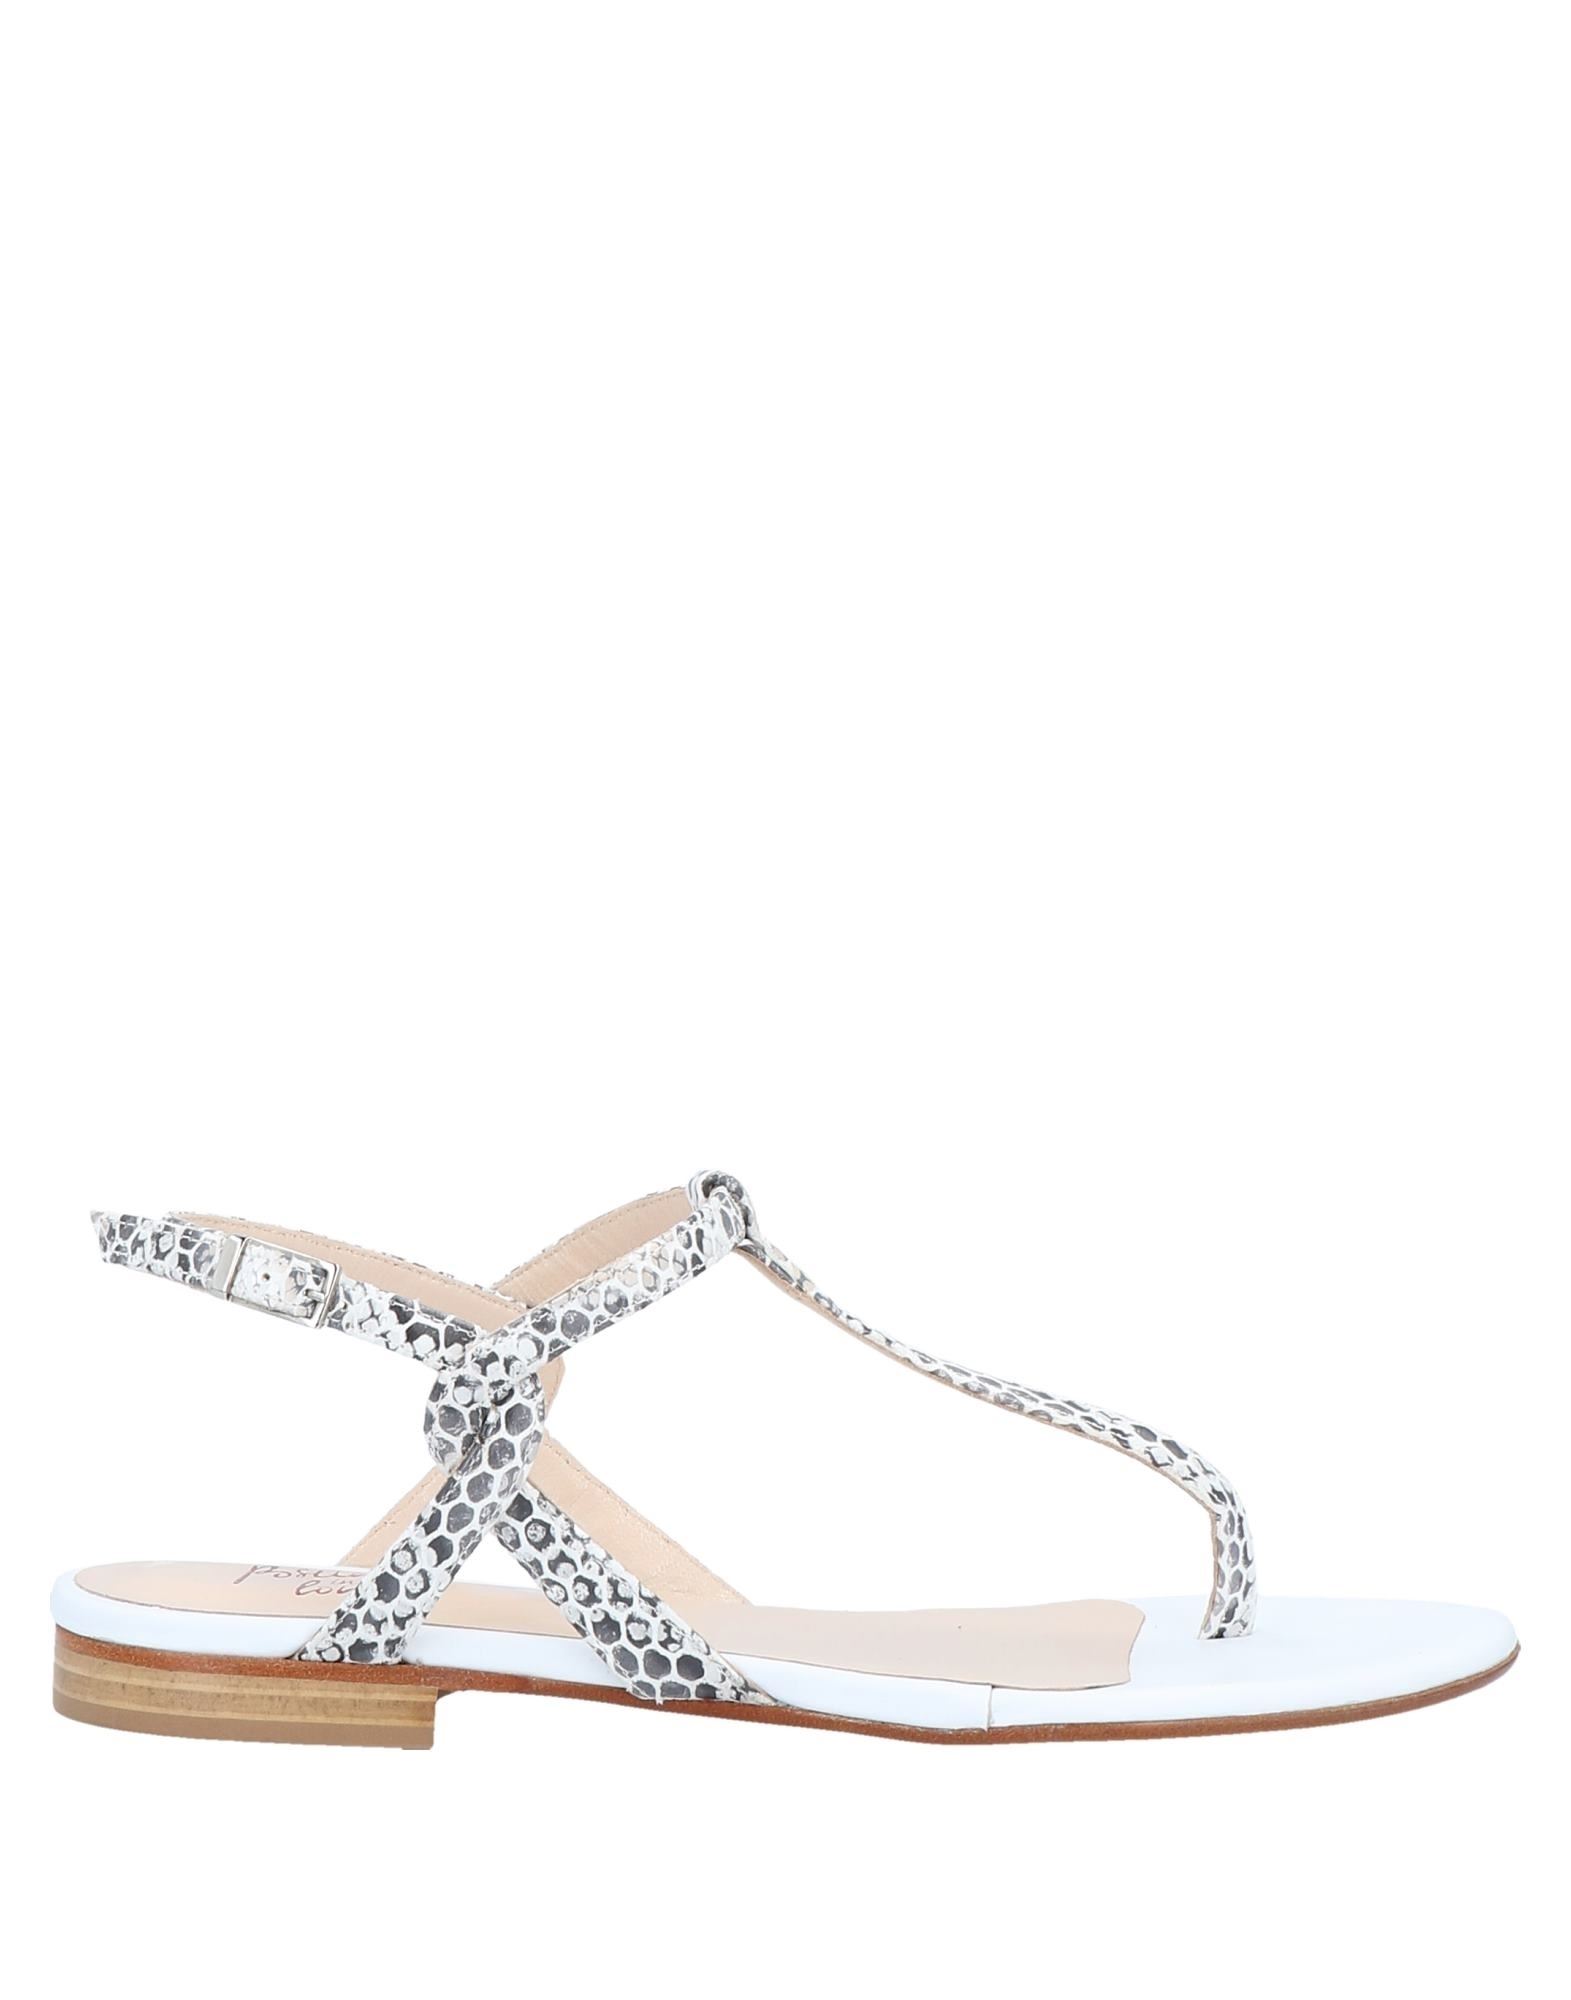 Positano In Love Toe Strap Sandals In White | ModeSens